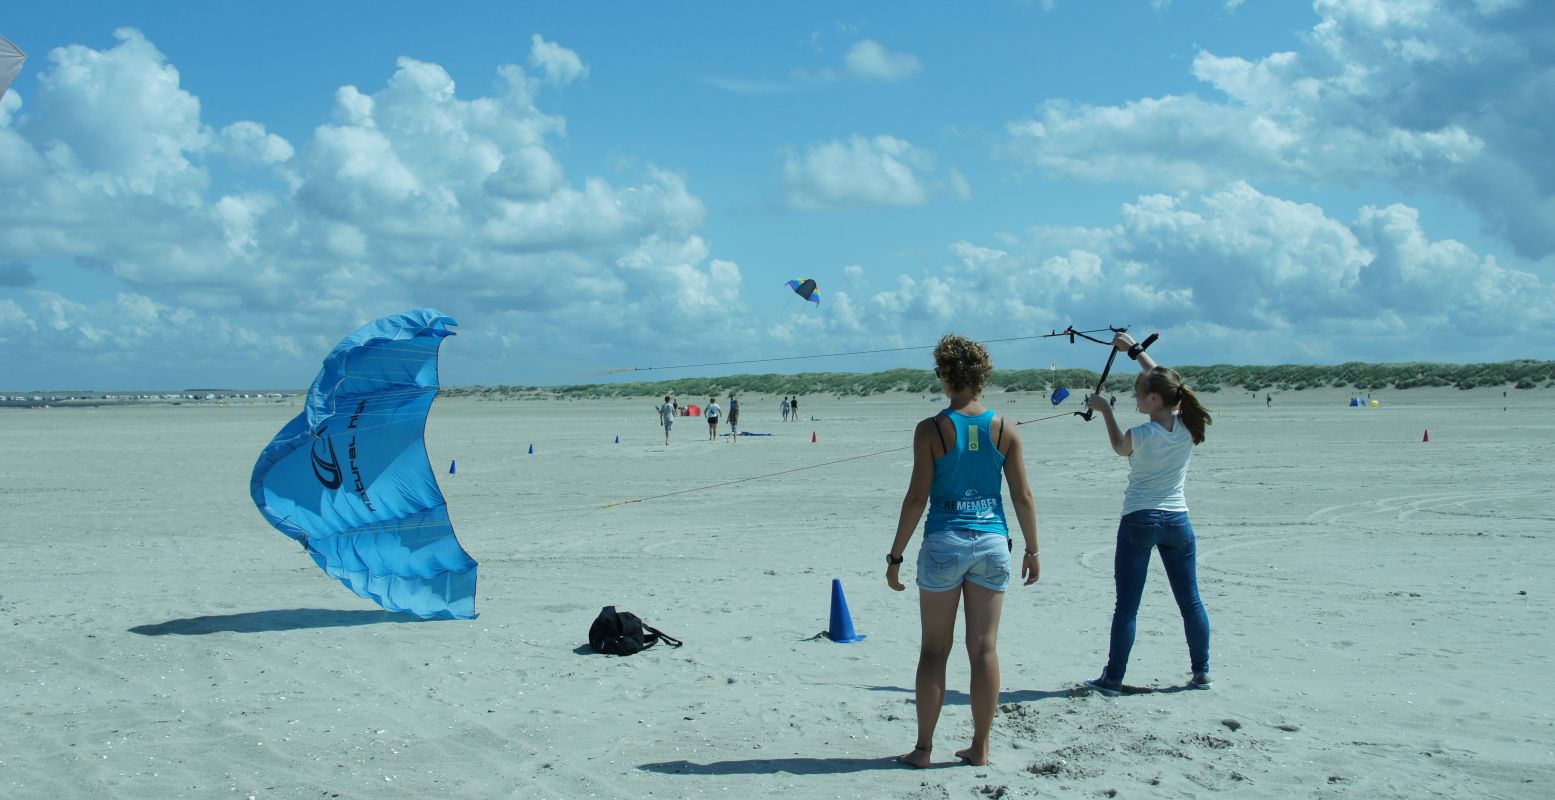 Niet te hard sturen, want de kite stort zo weer neer. Foto: DagjeWeg.NL.